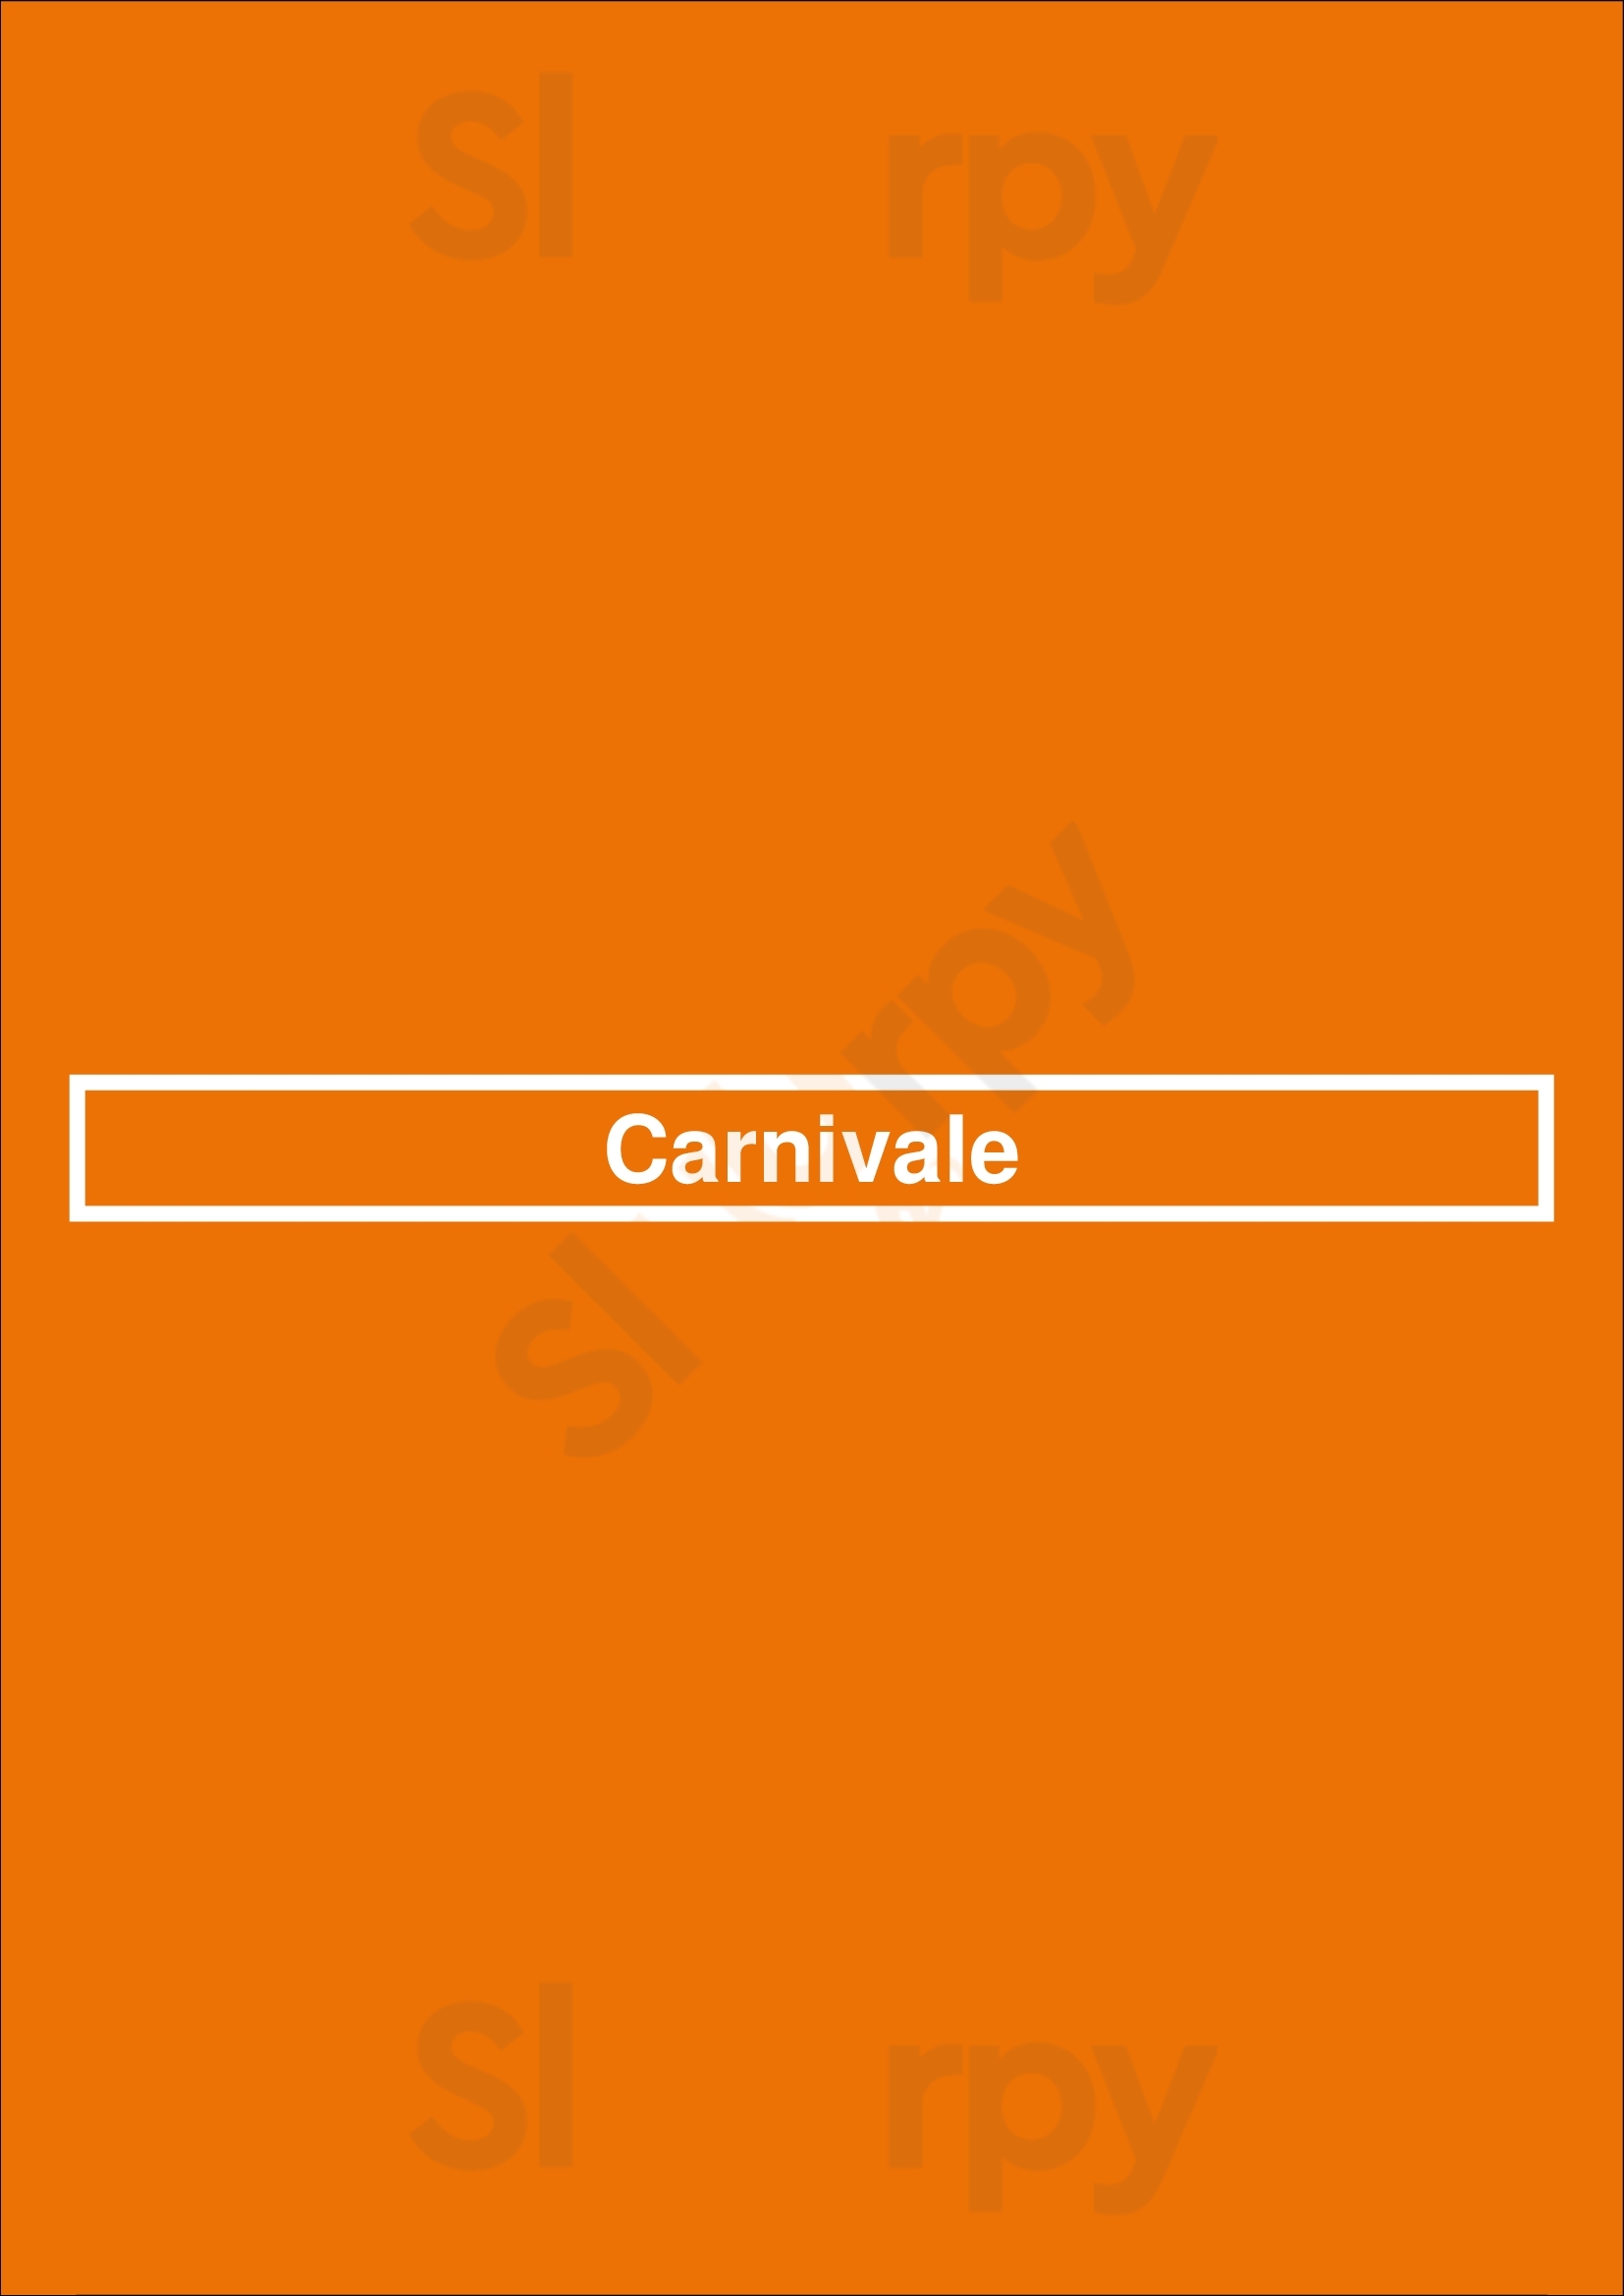 Carnivale Chicago Menu - 1